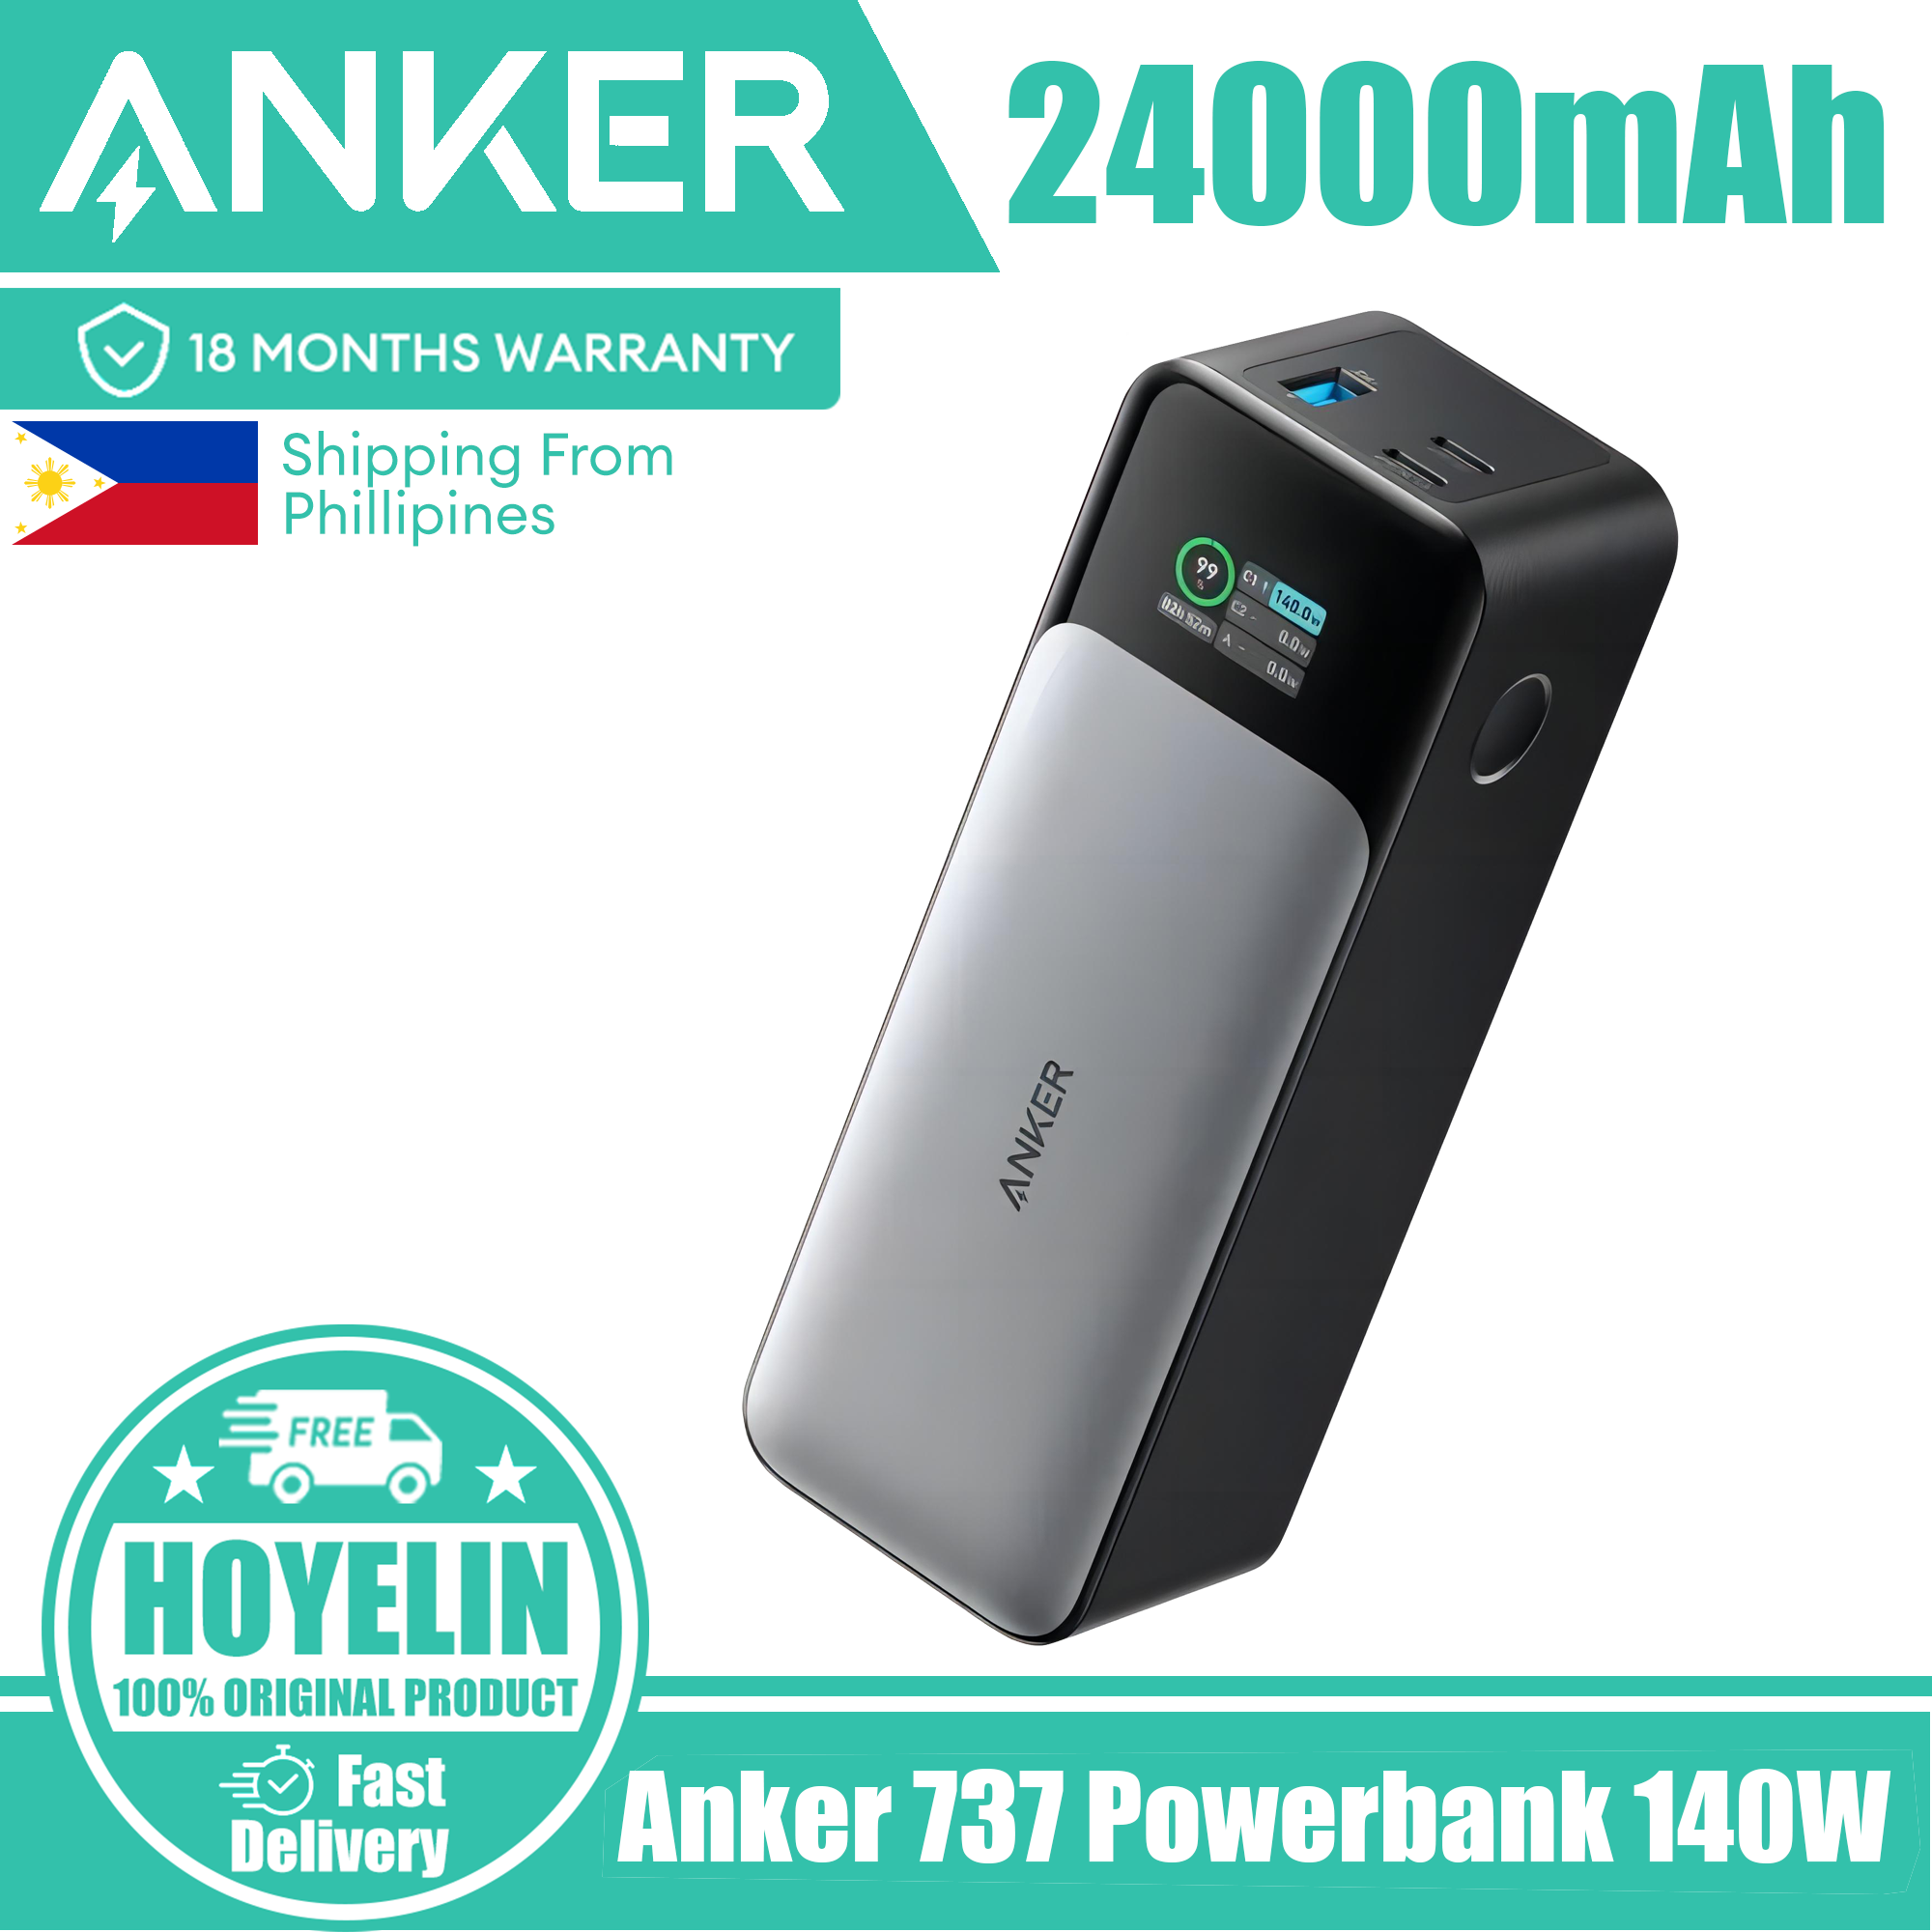 Anker 737 Power Bank 24000mAh 140W Powerbank 3-Port Portable